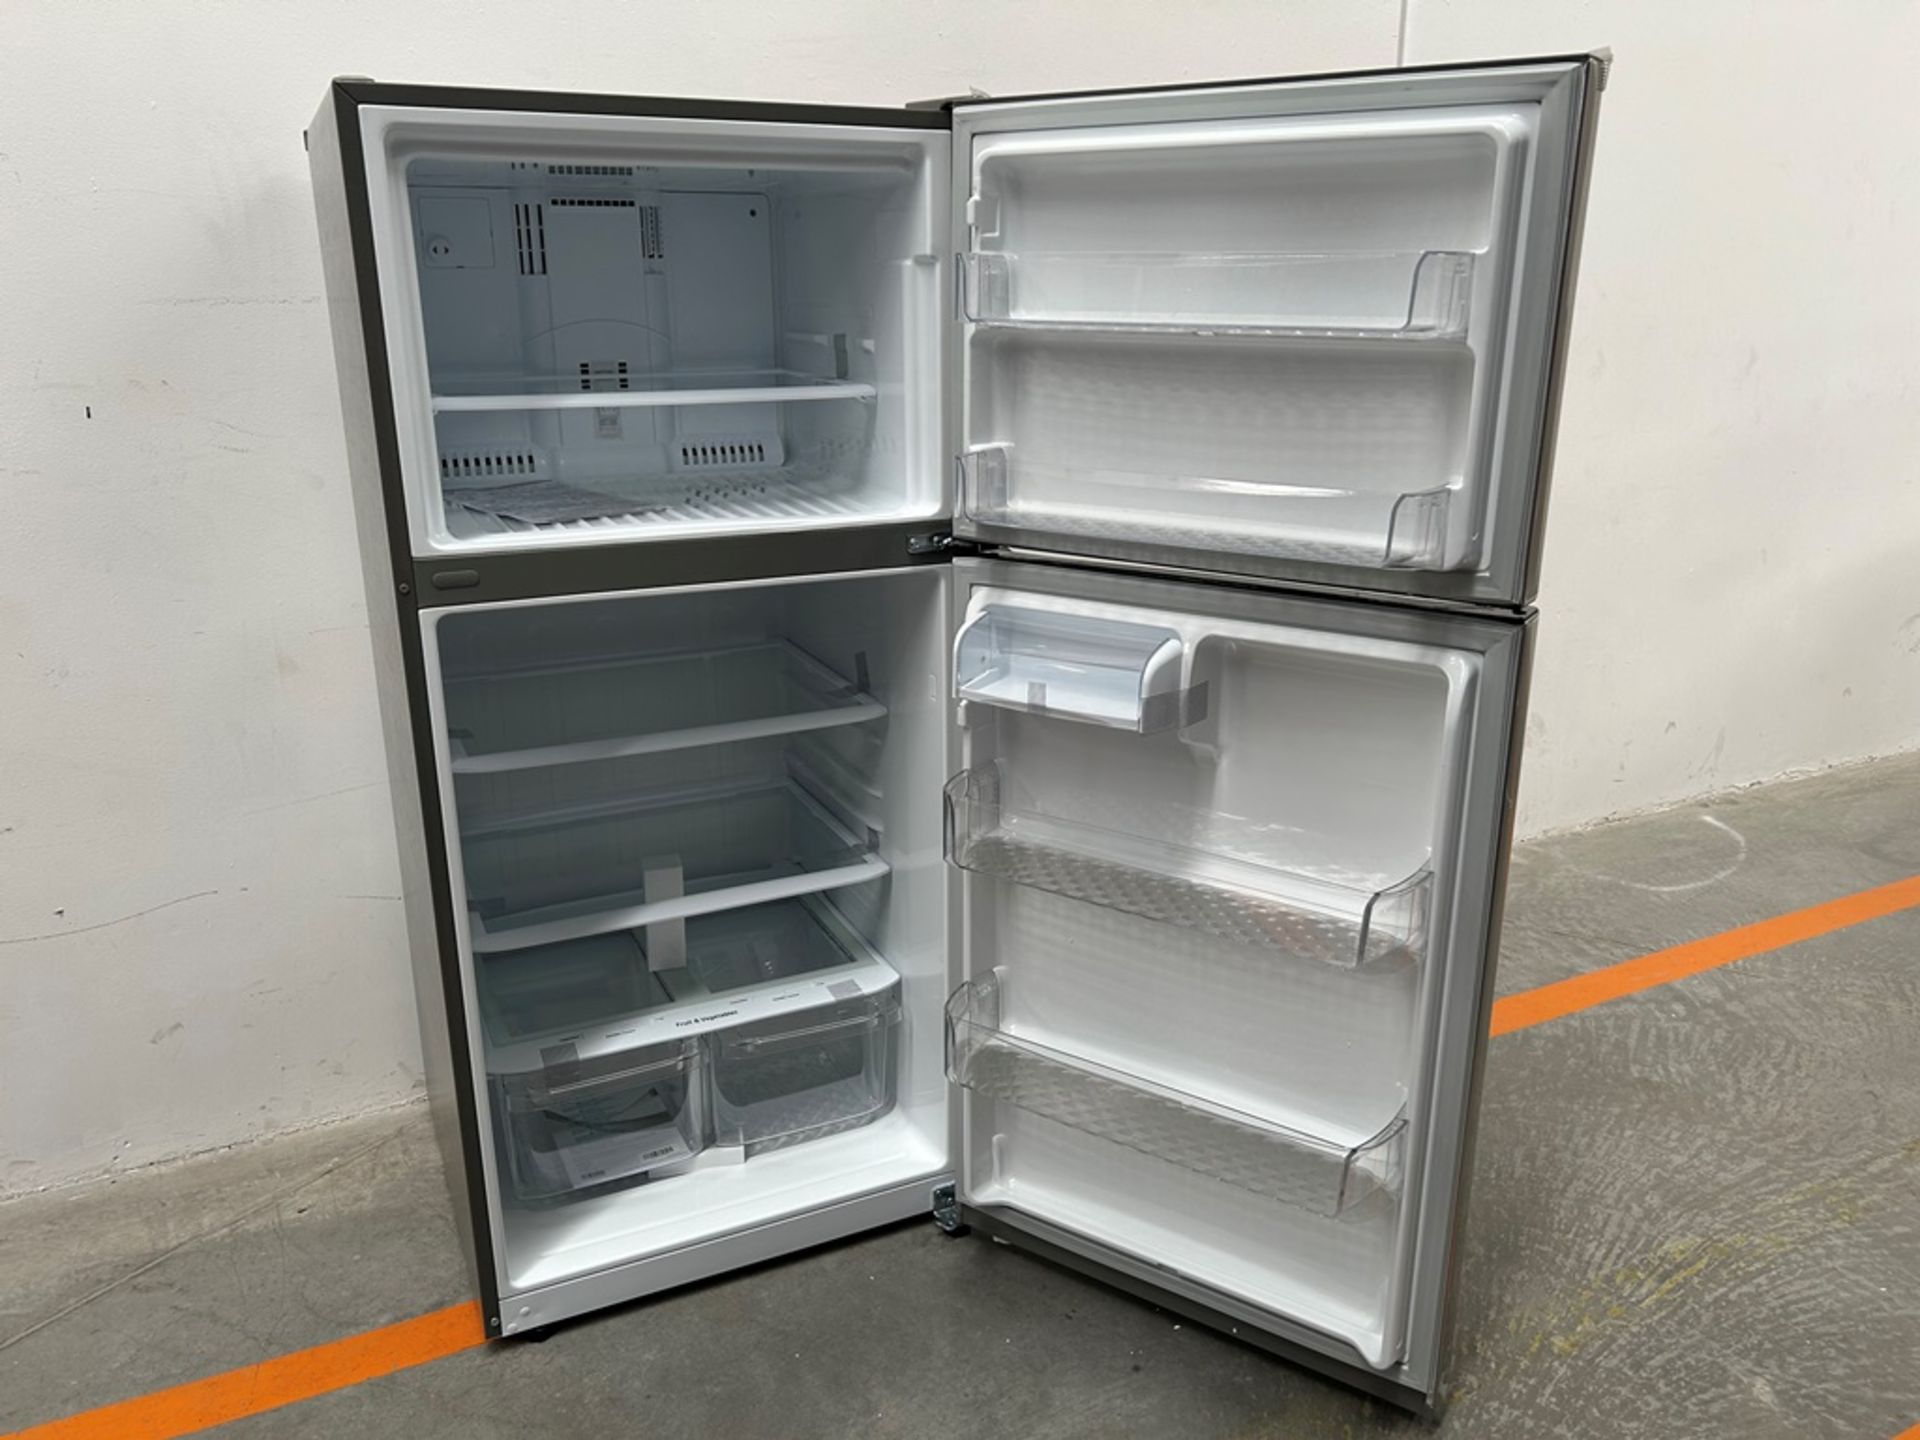 (NUEVO) Refrigerador Marca LG, Modelo LT57BPSX, Serie 2D689, Color GRIS - Bild 4 aus 7